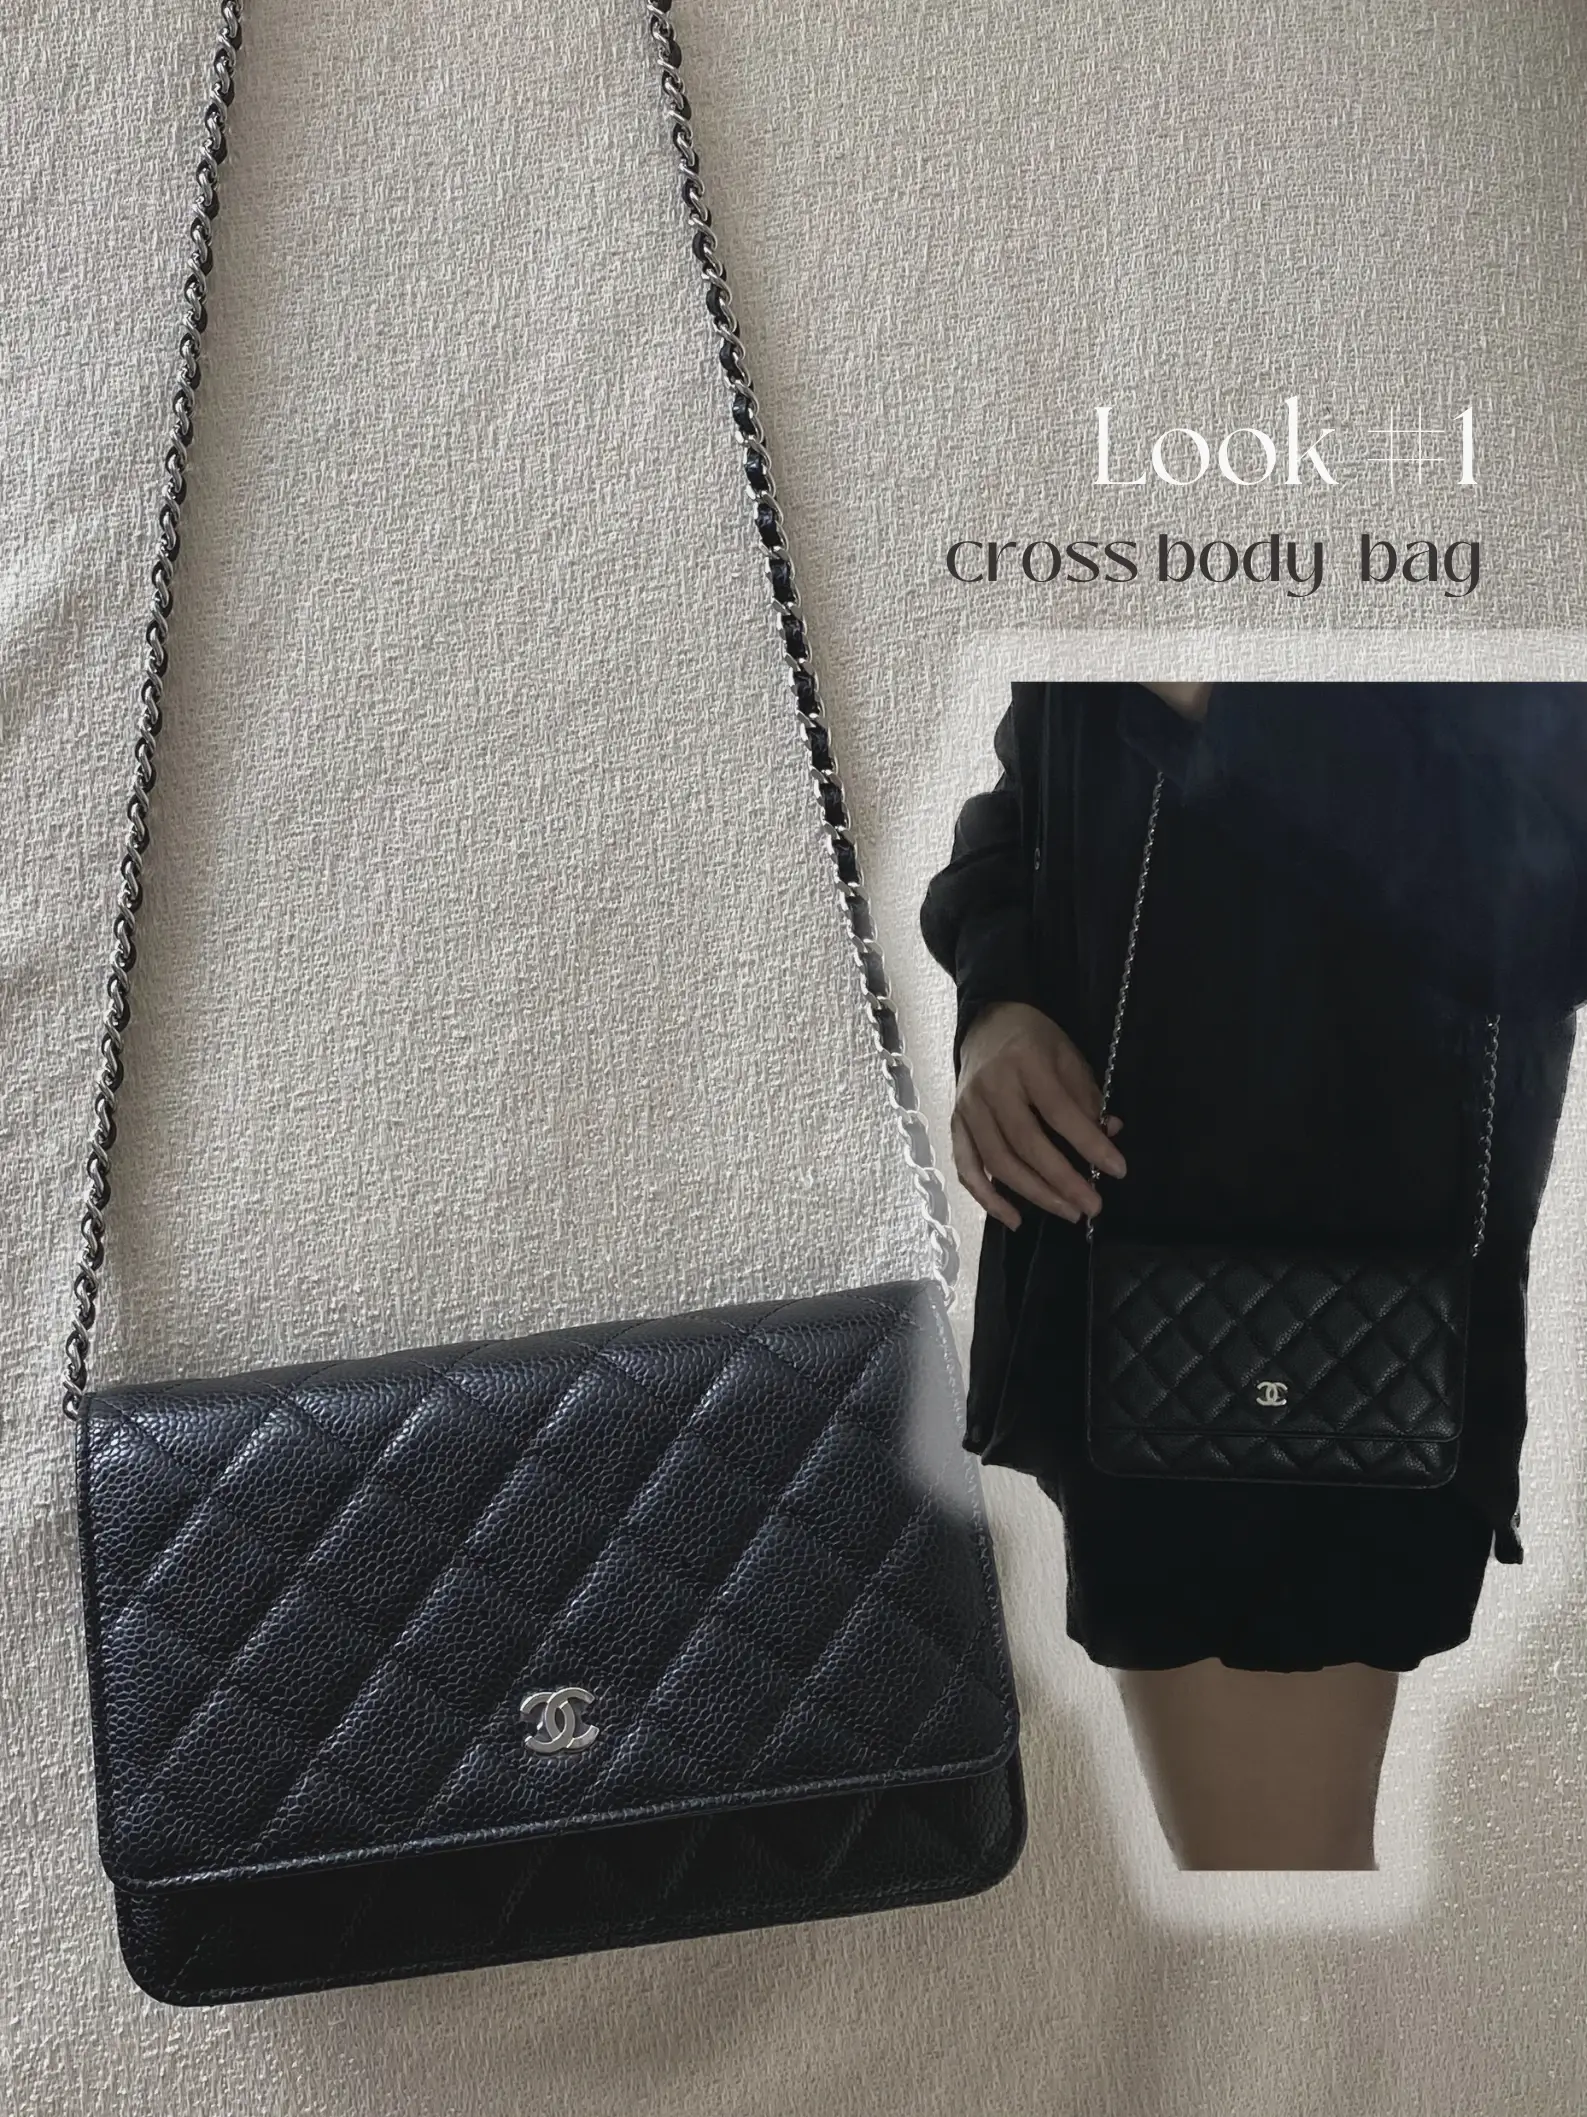 Chanel's Classic WOC is a mini Classic Flap bag 👀